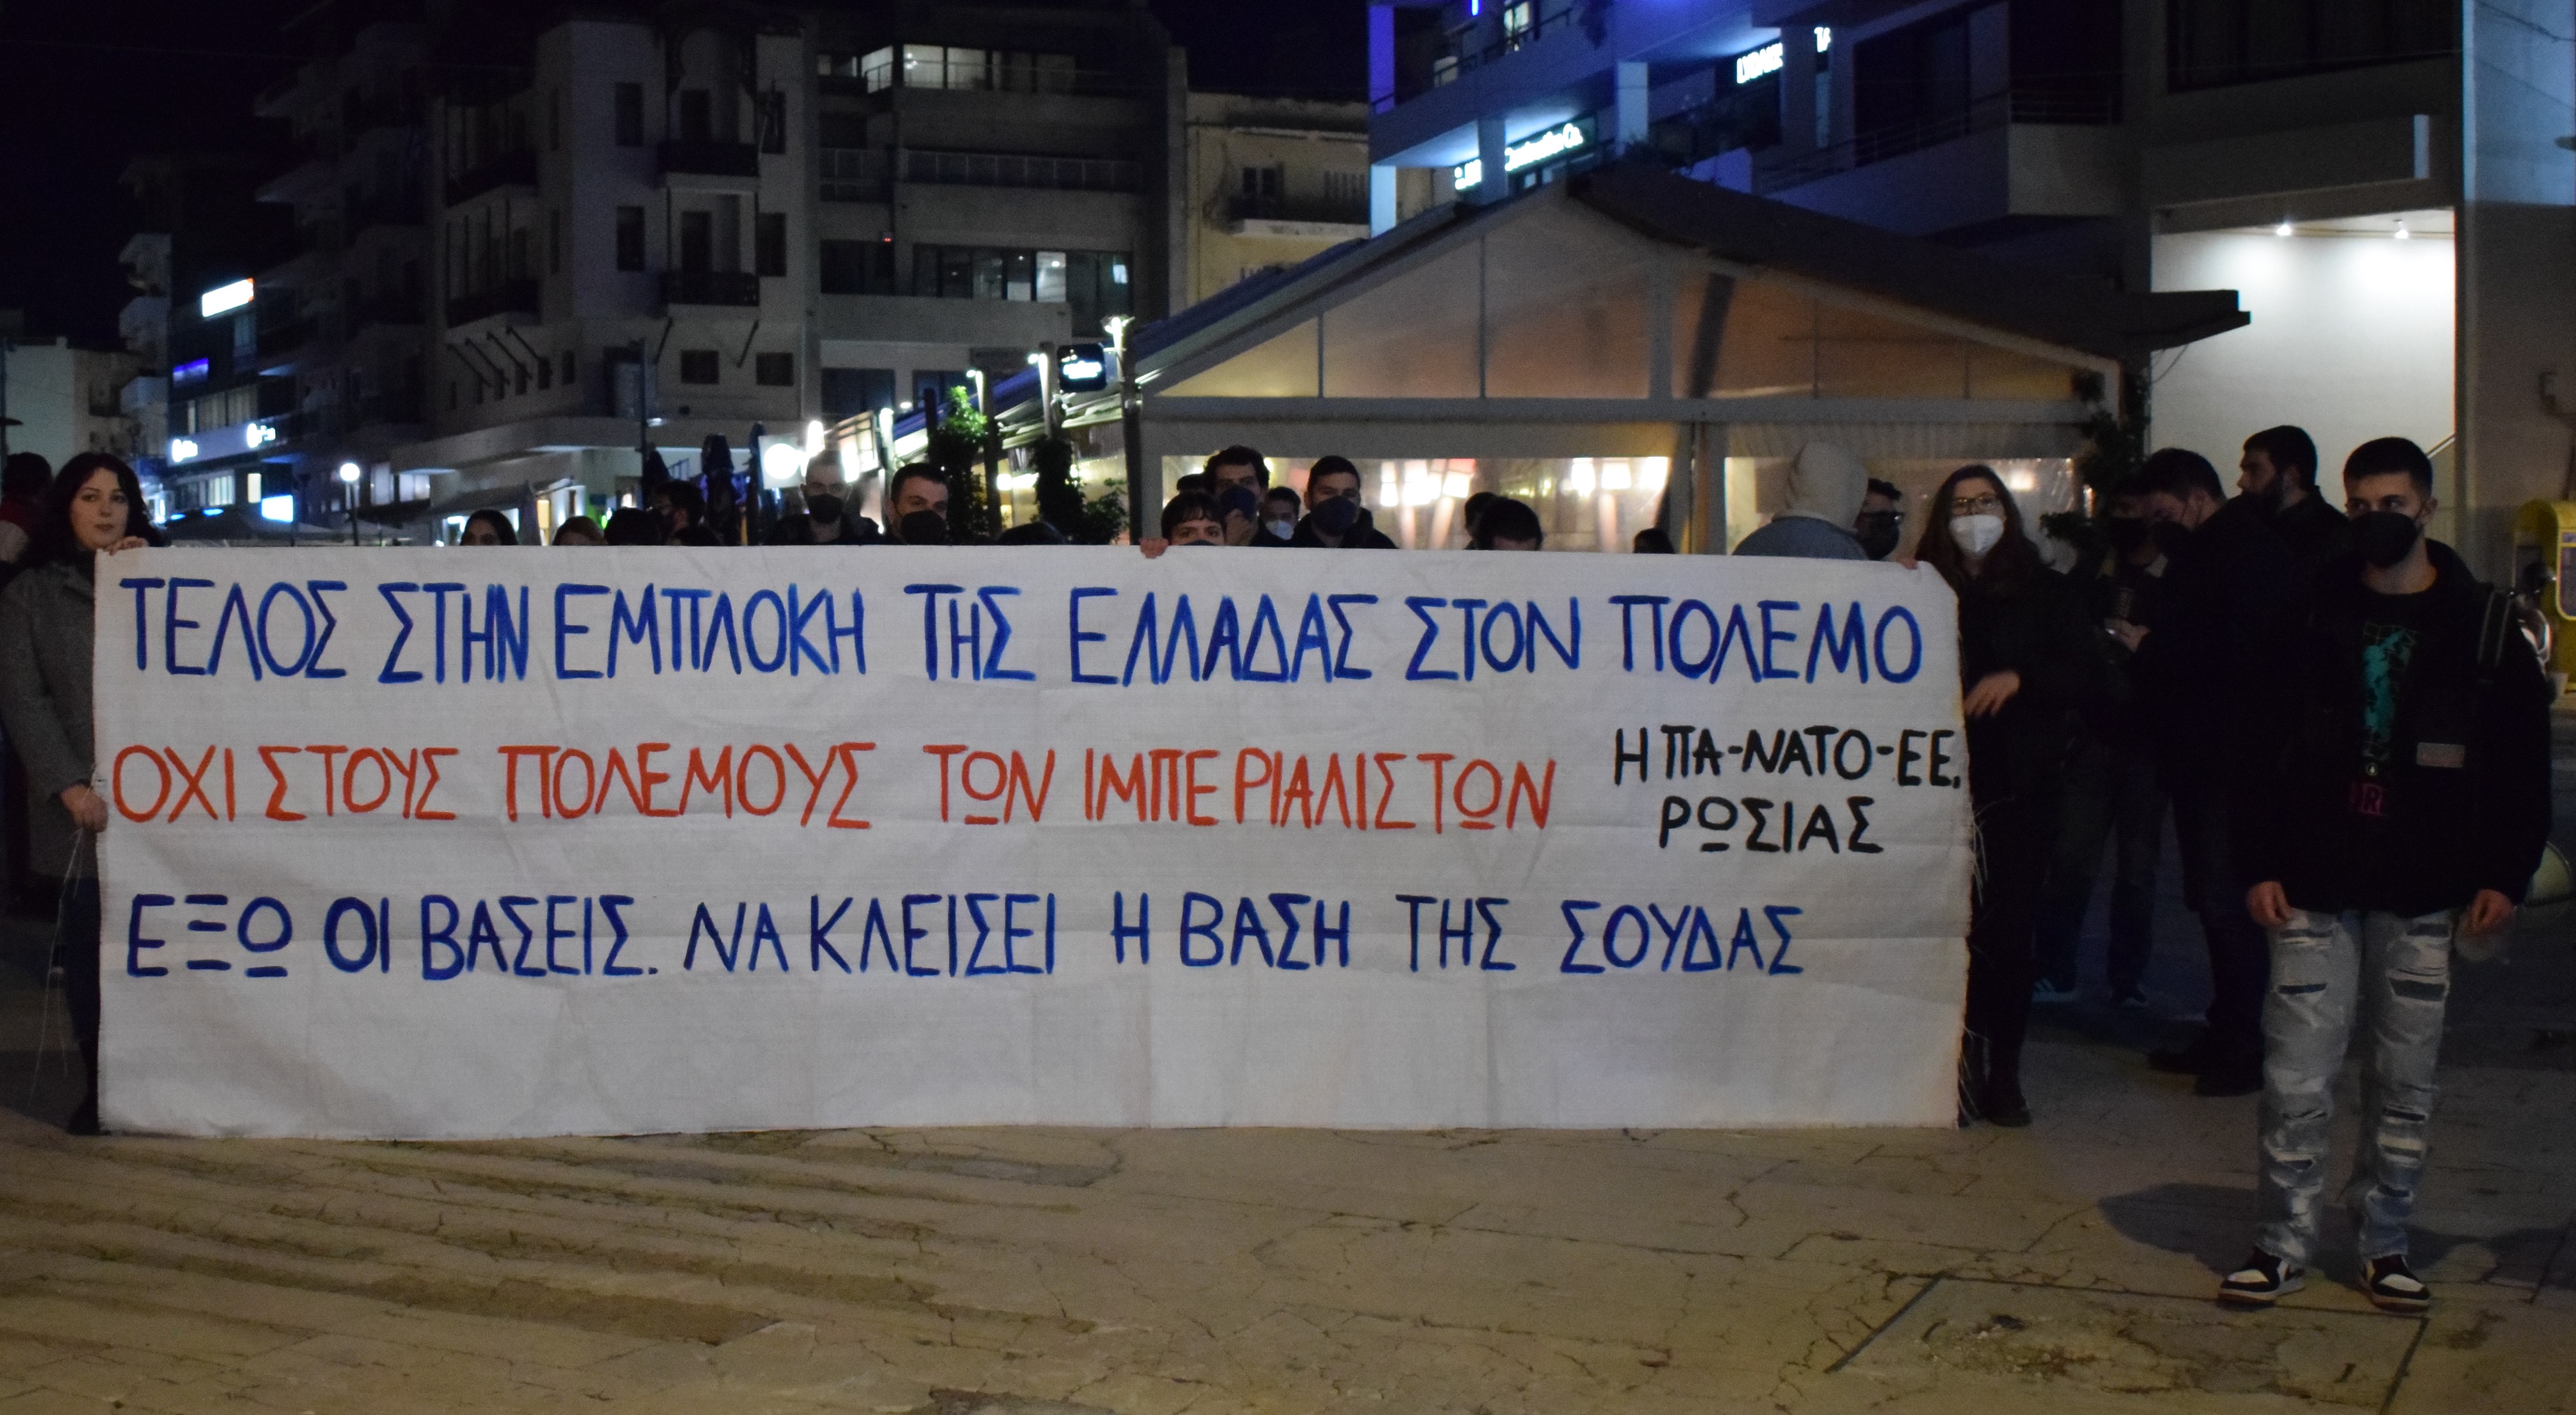 Φοιτητικοί σύλλογοι της Κρήτης πραγματοποίησαν αντιπολεμικό συλλαλητήριο